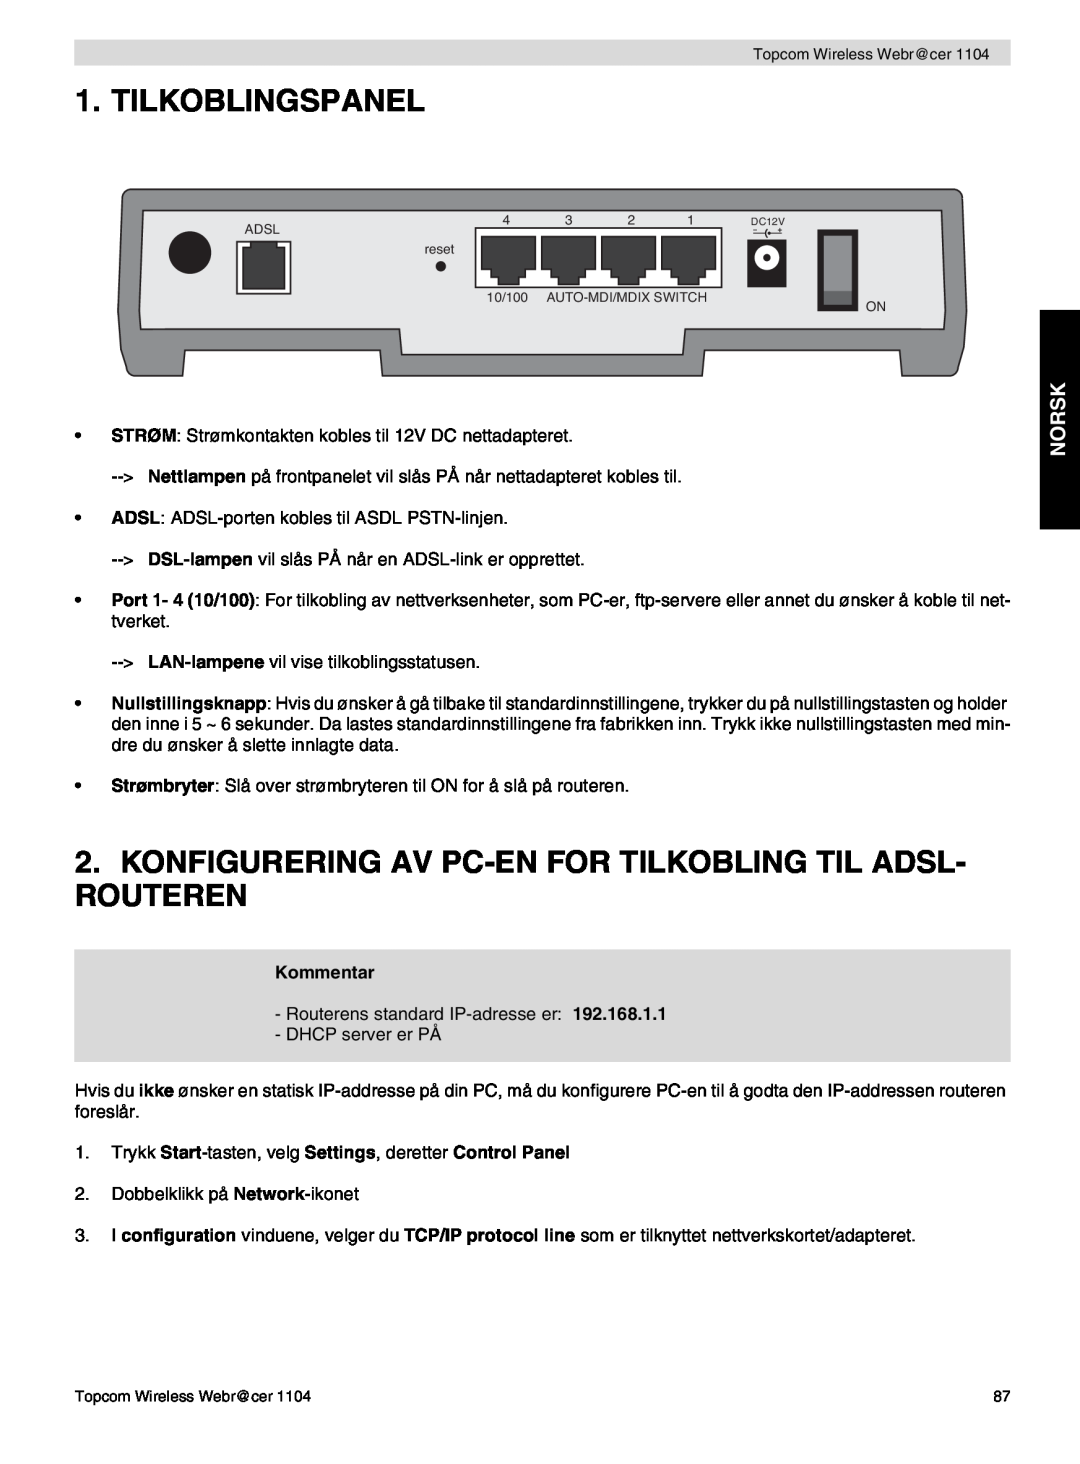 Topcom 1104 manual do utilizador Tilkoblingspanel, Konfigurering Av Pc-En For Tilkobling Til Adsl- Routeren, Norsk 